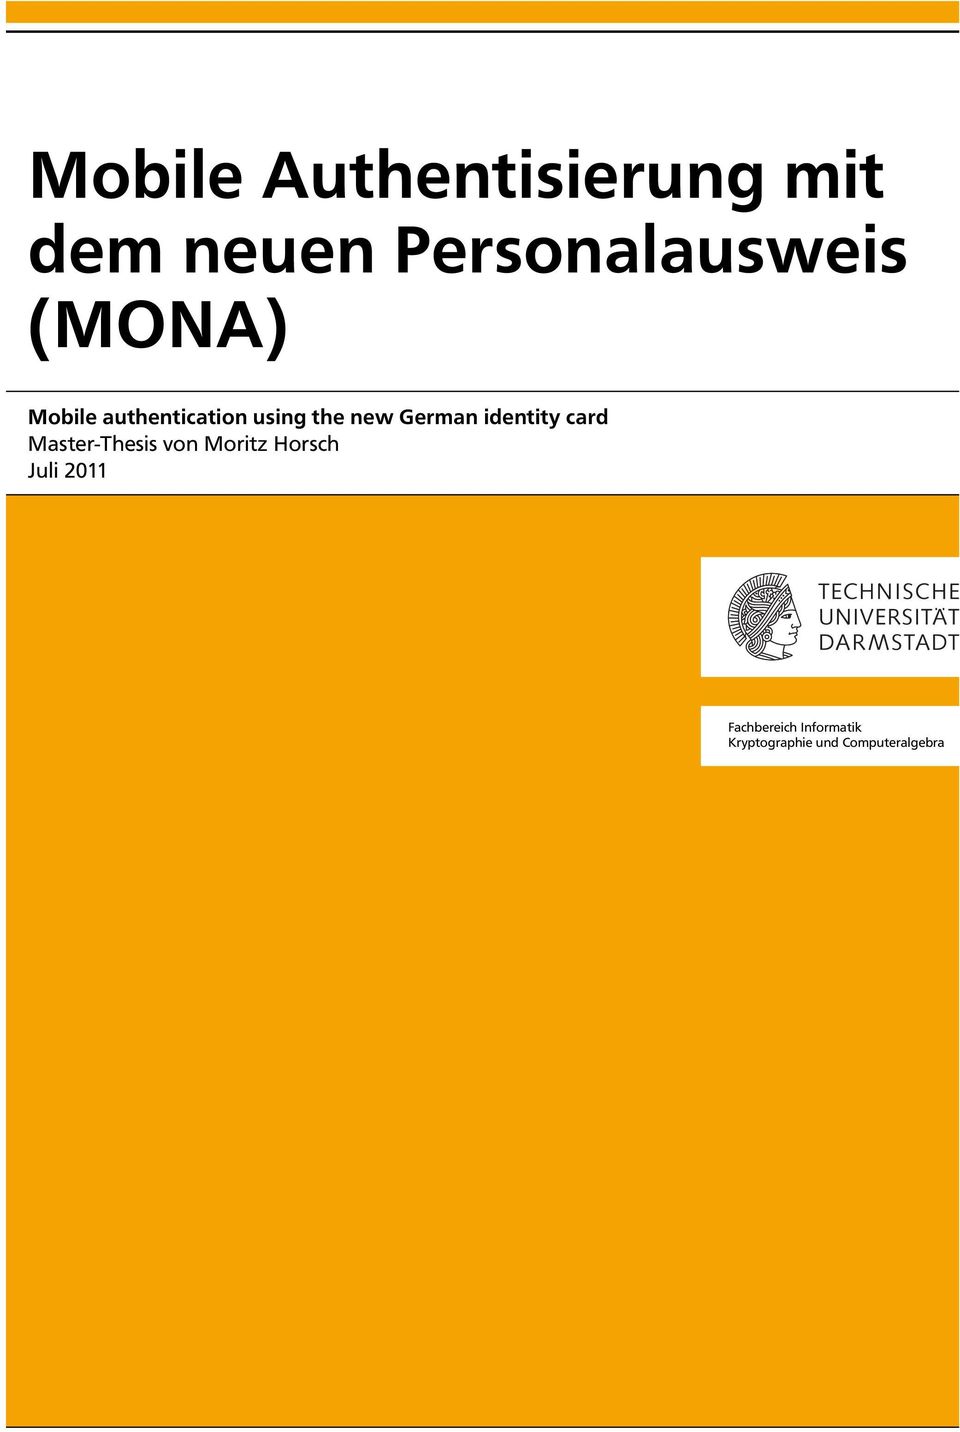 identity card Master-Thesis von Moritz Horsch Juli